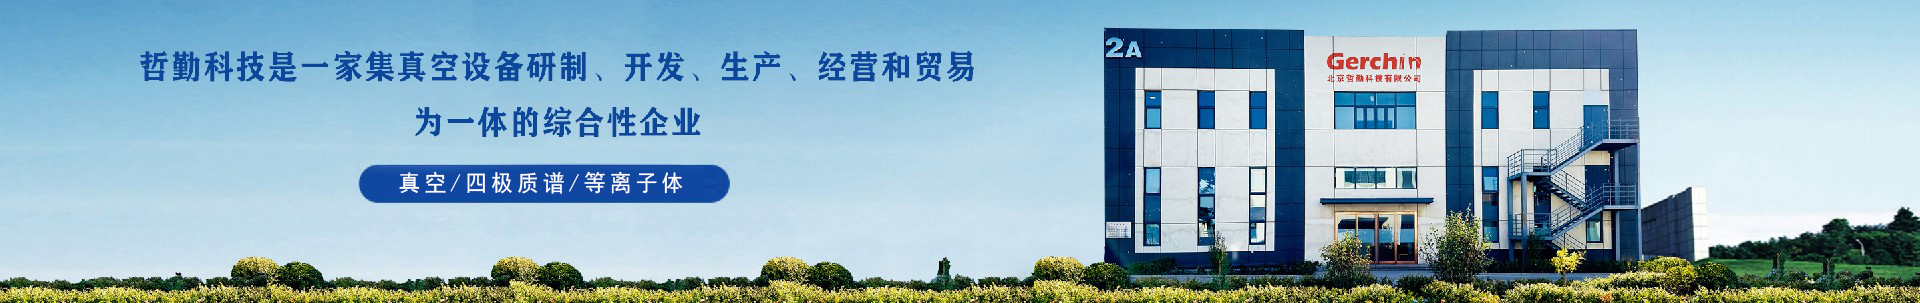 真空炉-北京哲勤科技有限公司